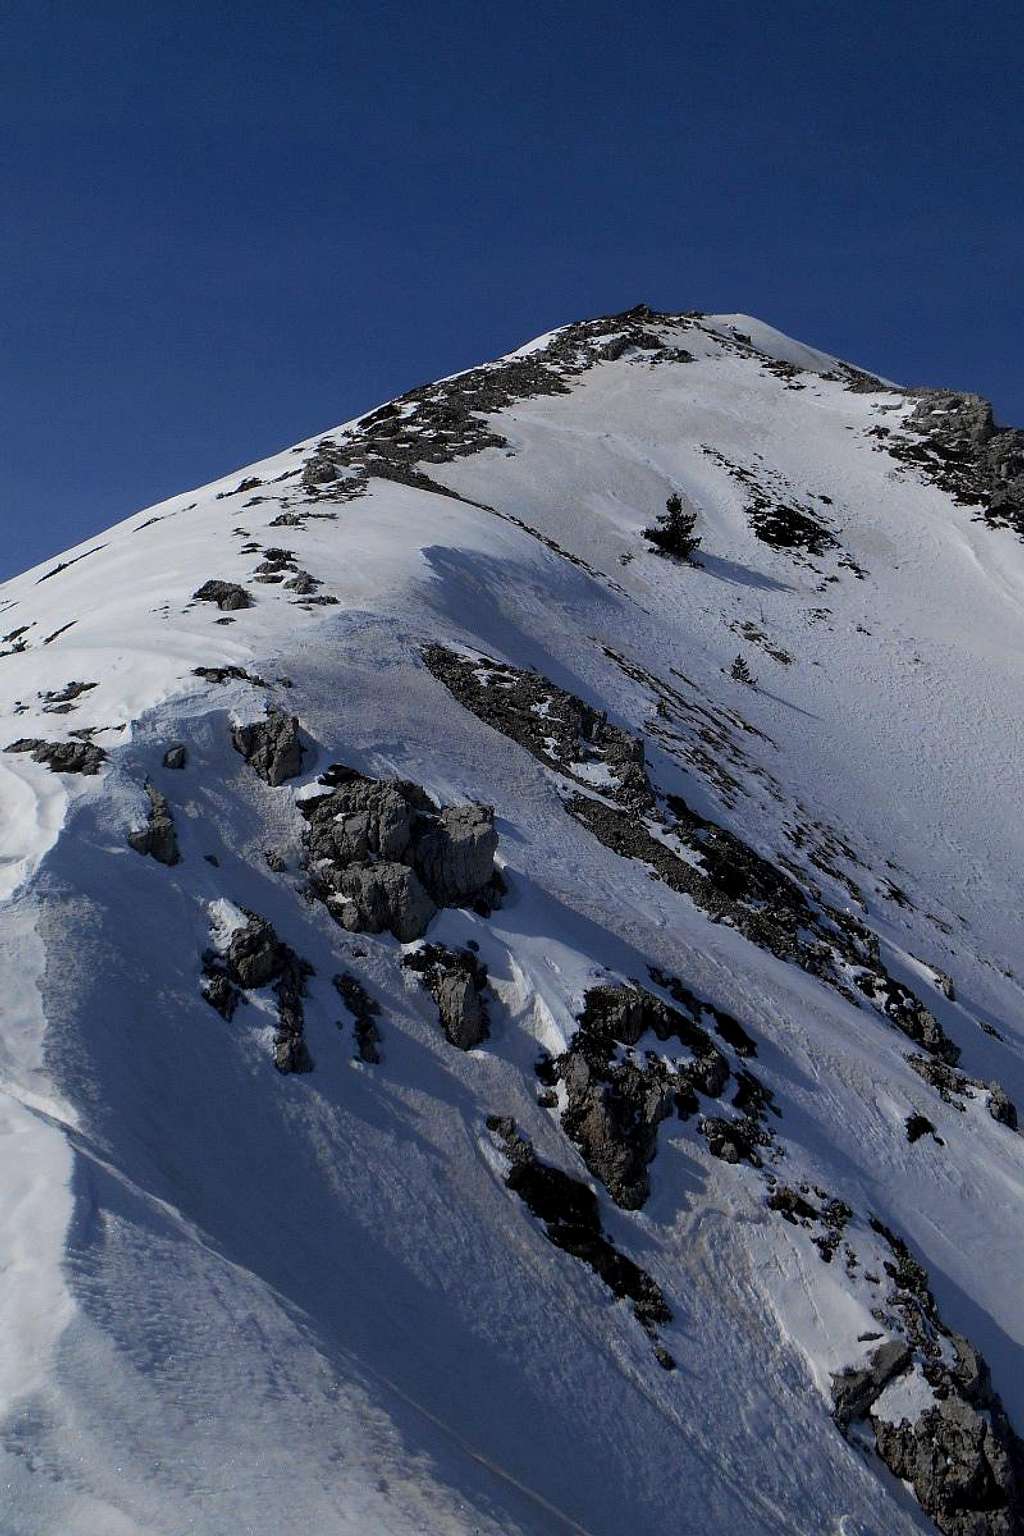 North ridge II (Monte Ogniquota)